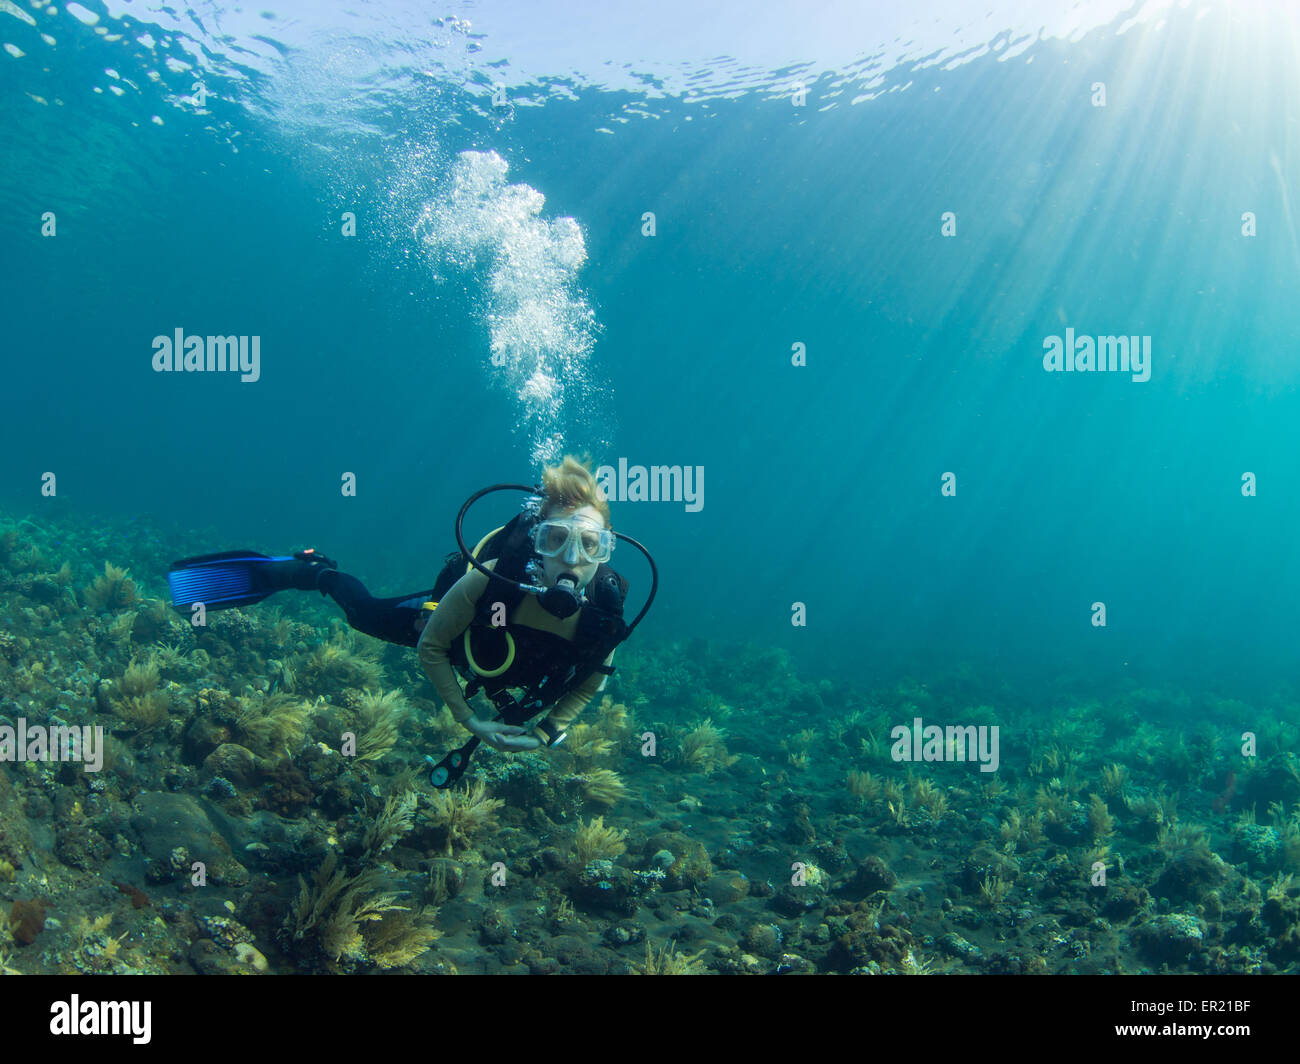 Plongeur femelle planant au-dessus d'une barrière de corail à Tulamben, Bali Indonésie Banque D'Images